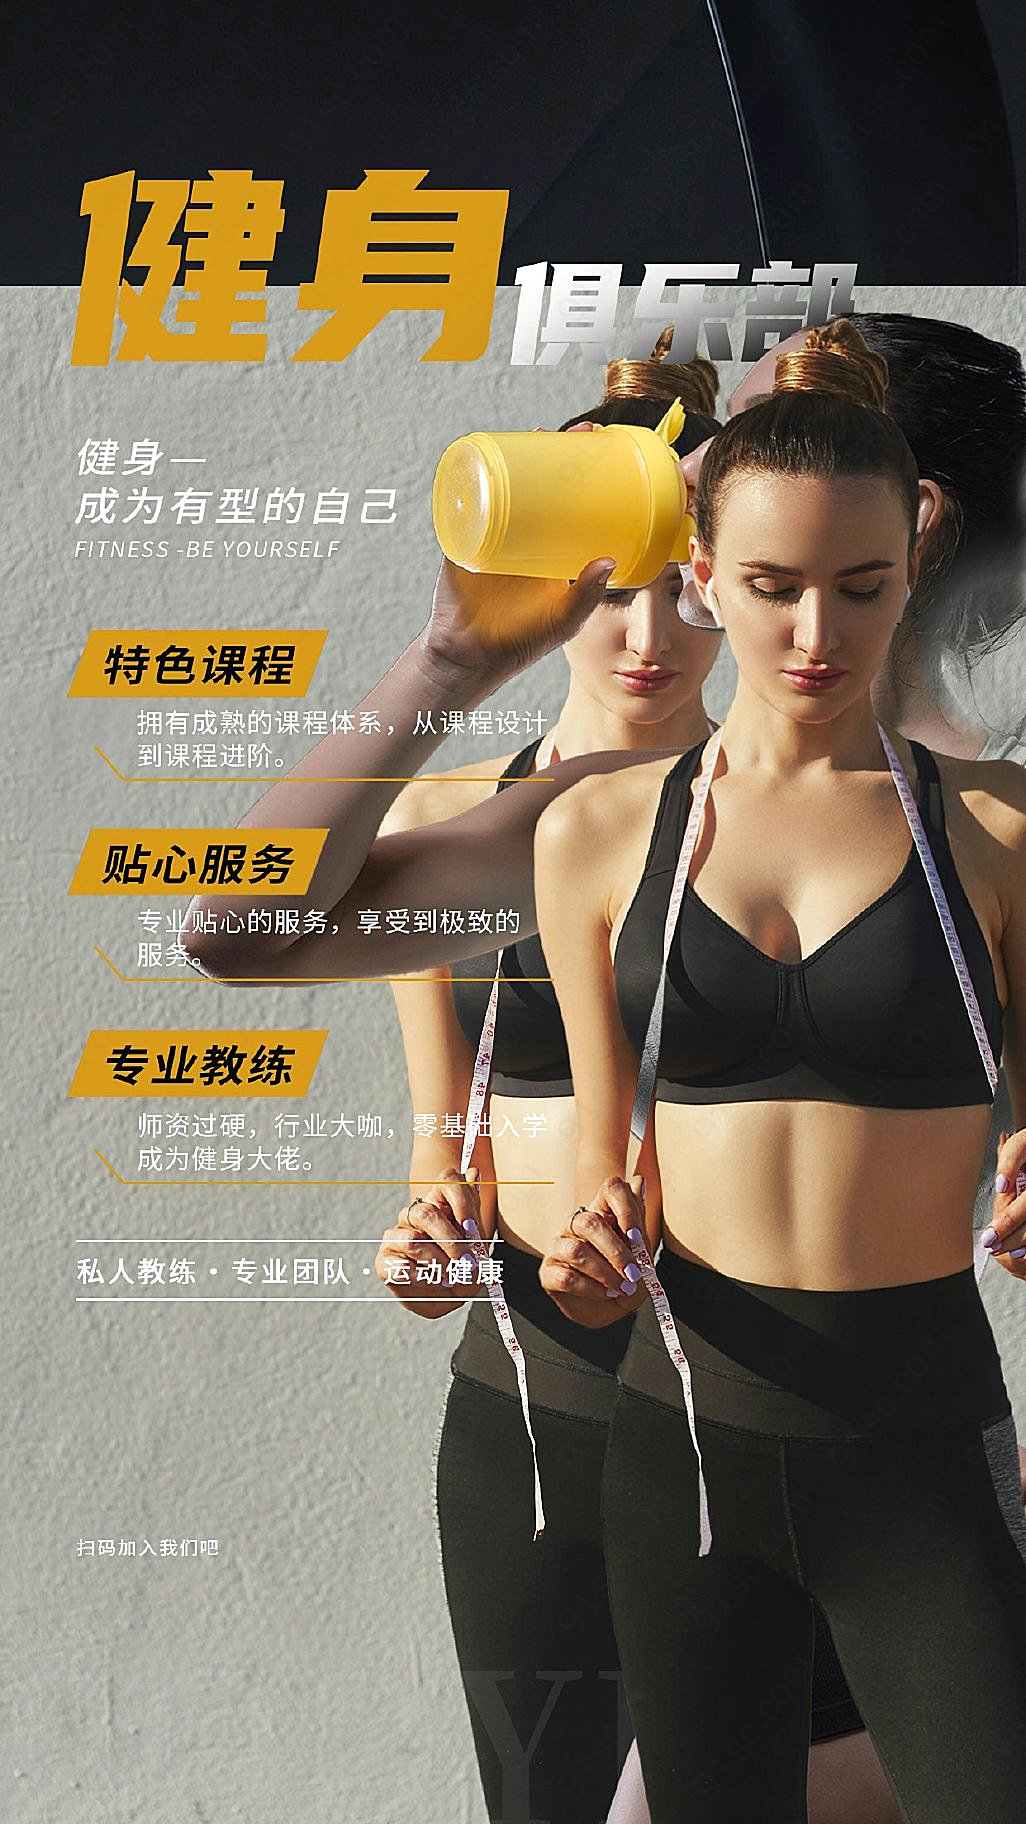 简约黑色风格健身俱乐部优惠促销海报新媒体用图下载